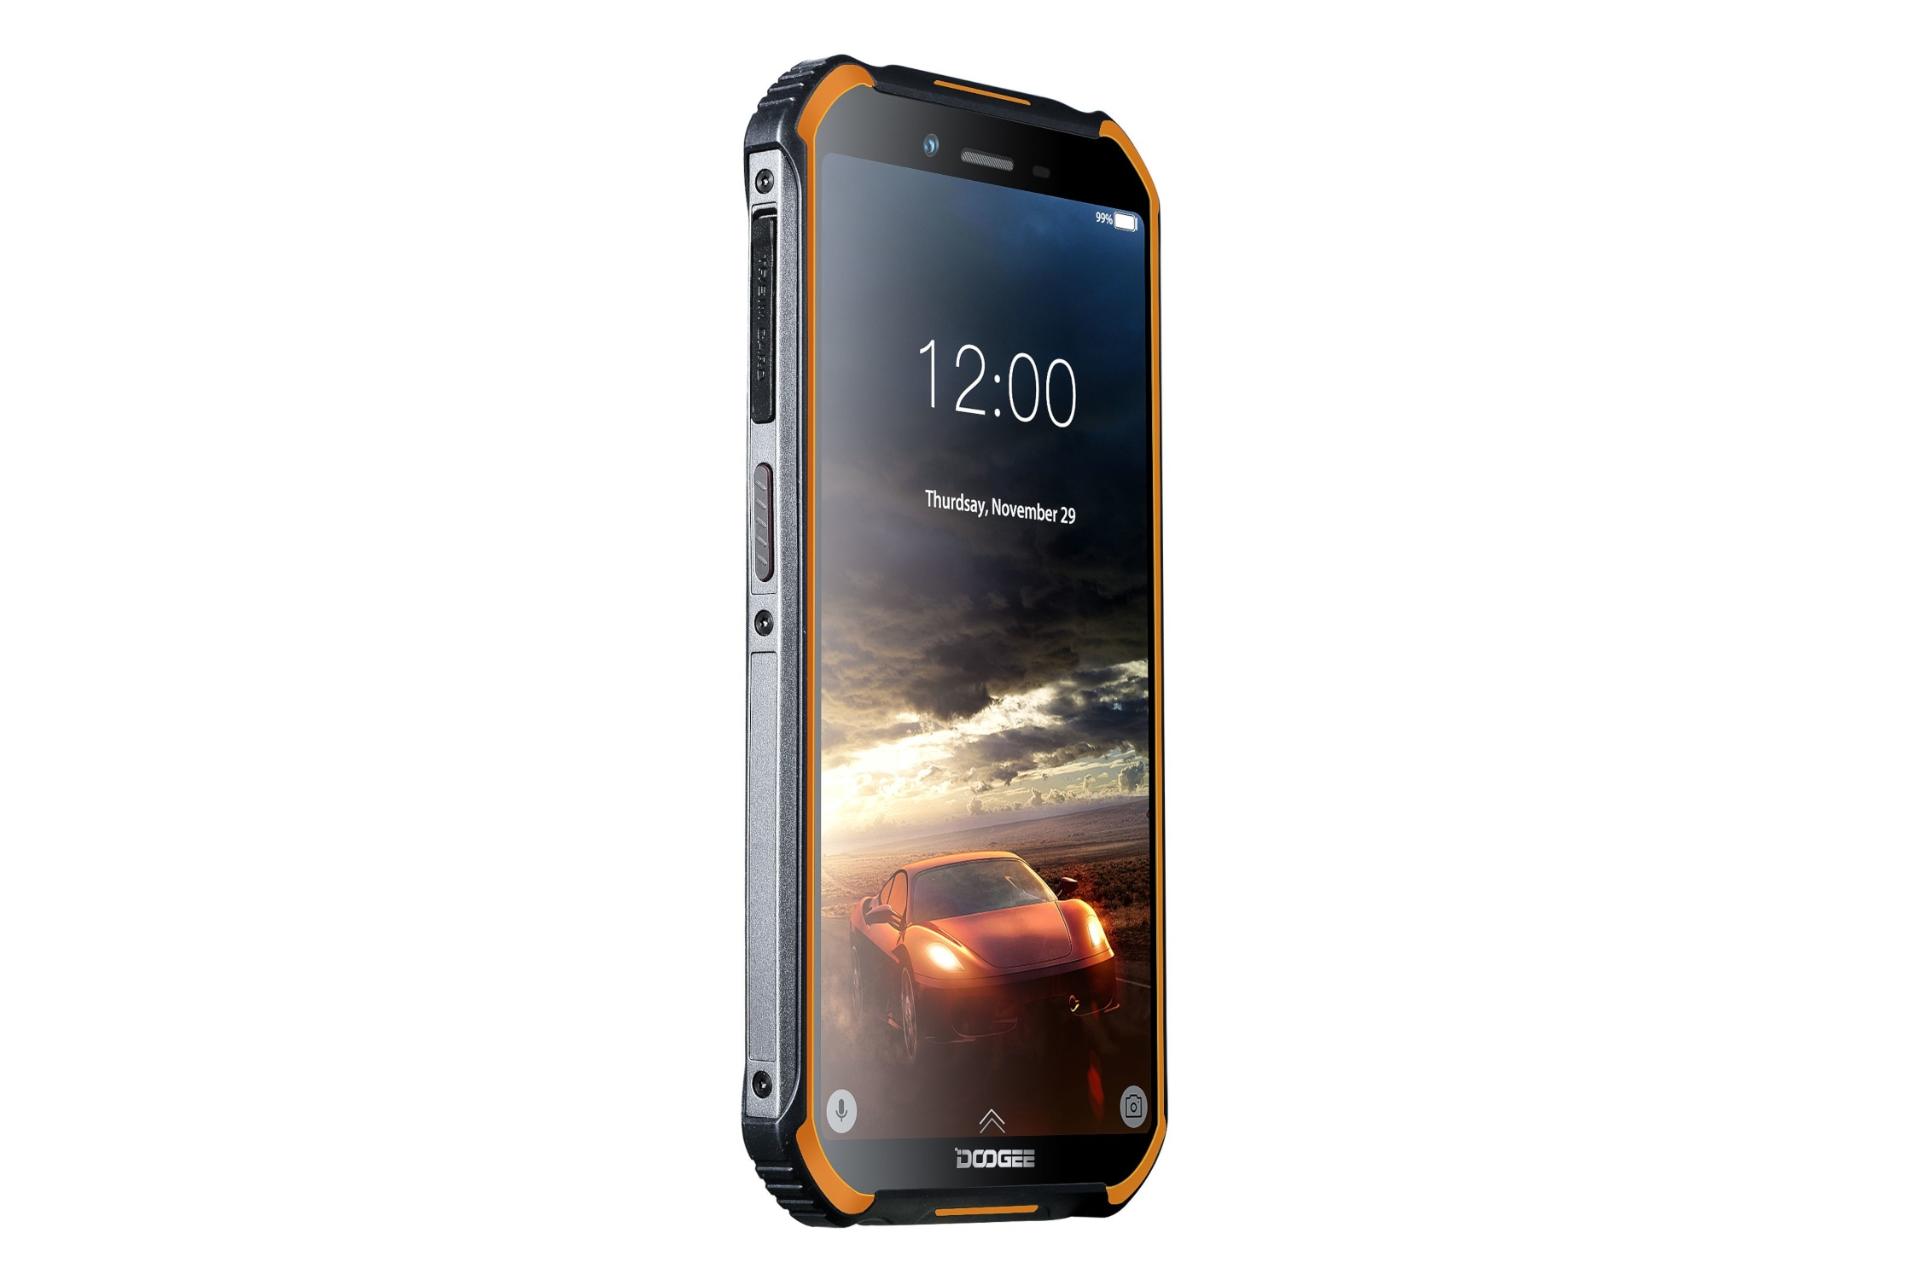 نمای کناری گوشی موبایل اس 40 دوجی / Doogee S40 نارنجی